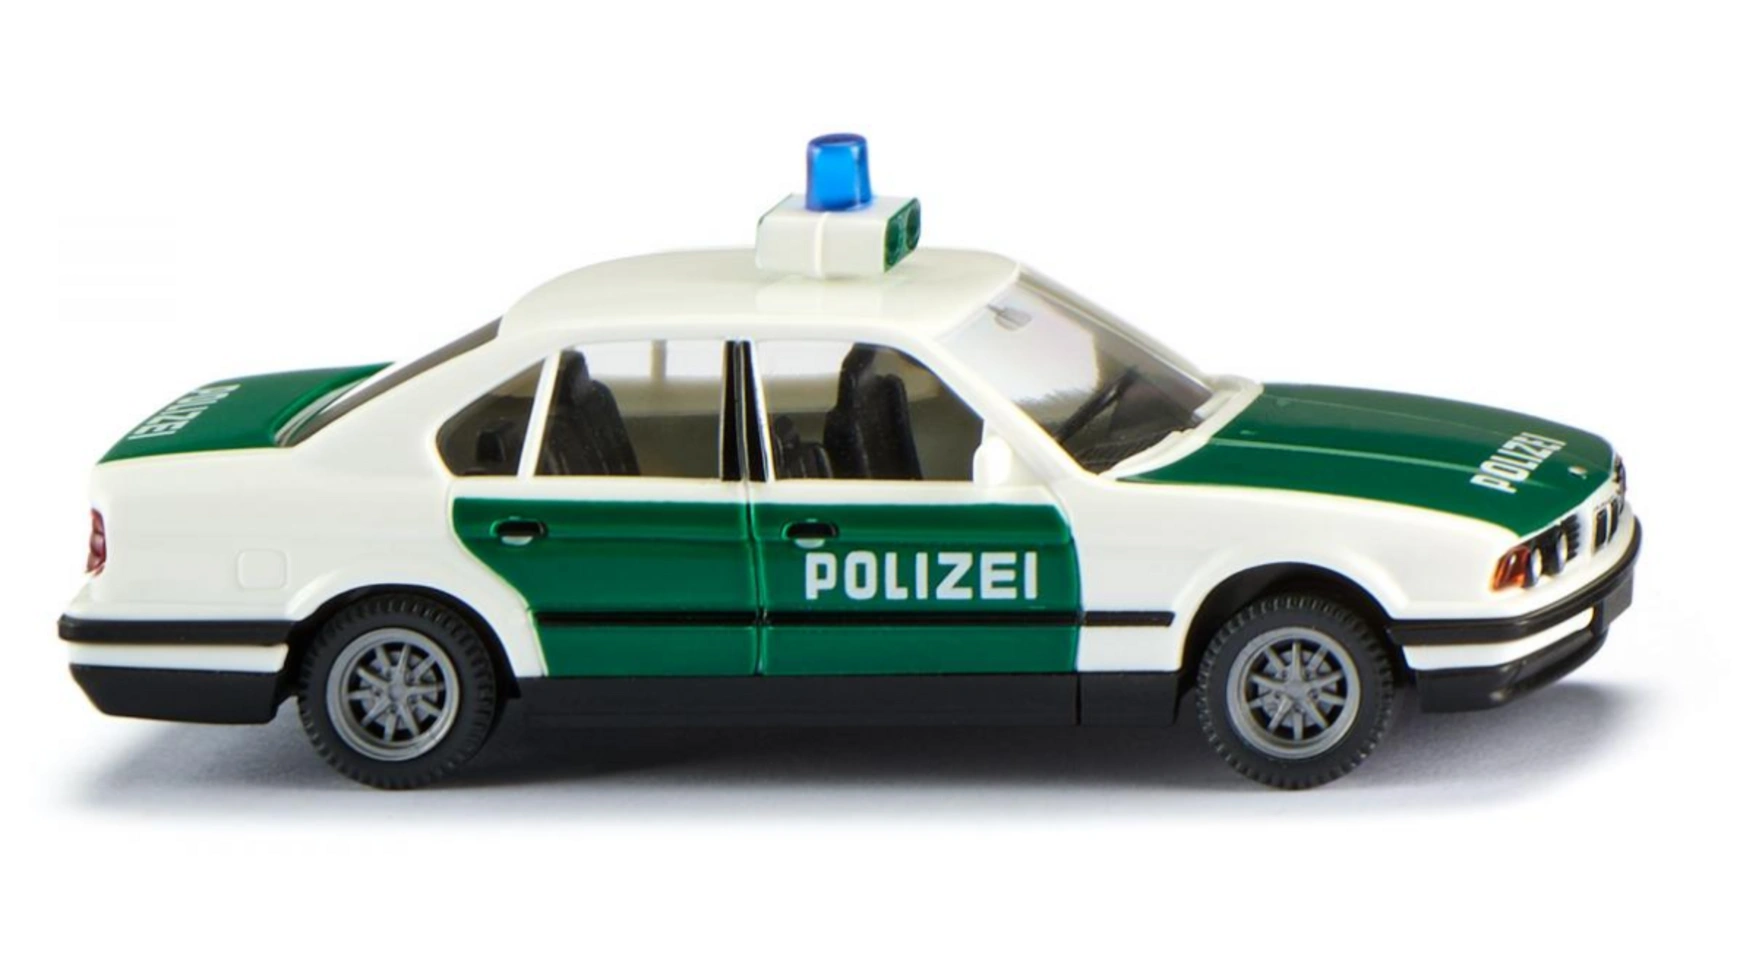 Wiking 1:87 Полиция BMW 525i цена и фото